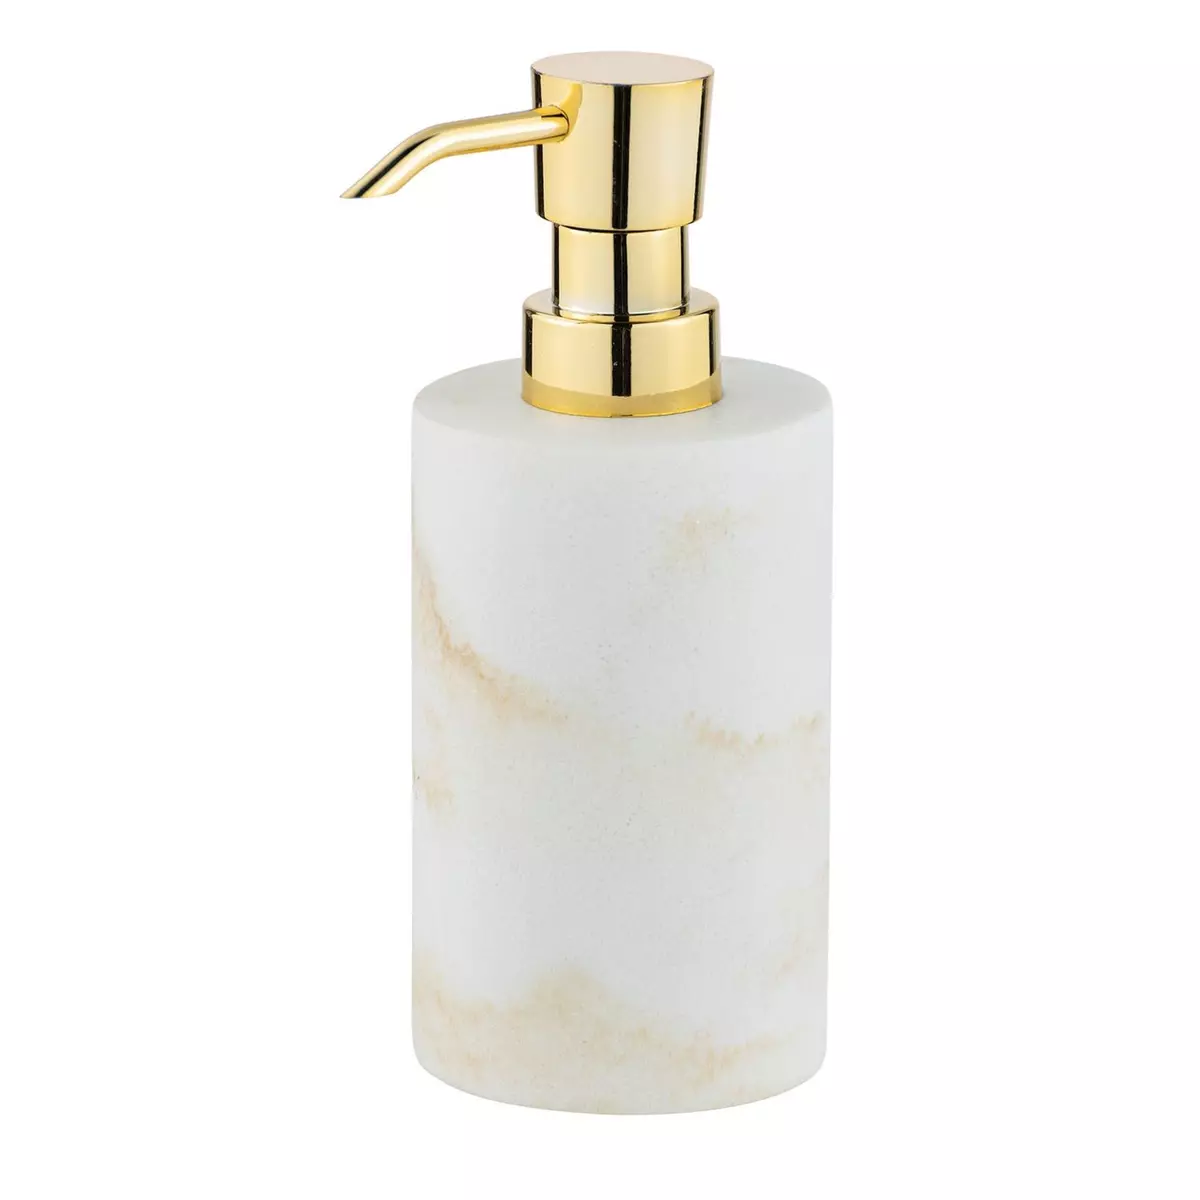 Wenko Distributeur de savon design marbre Odos - Blanc